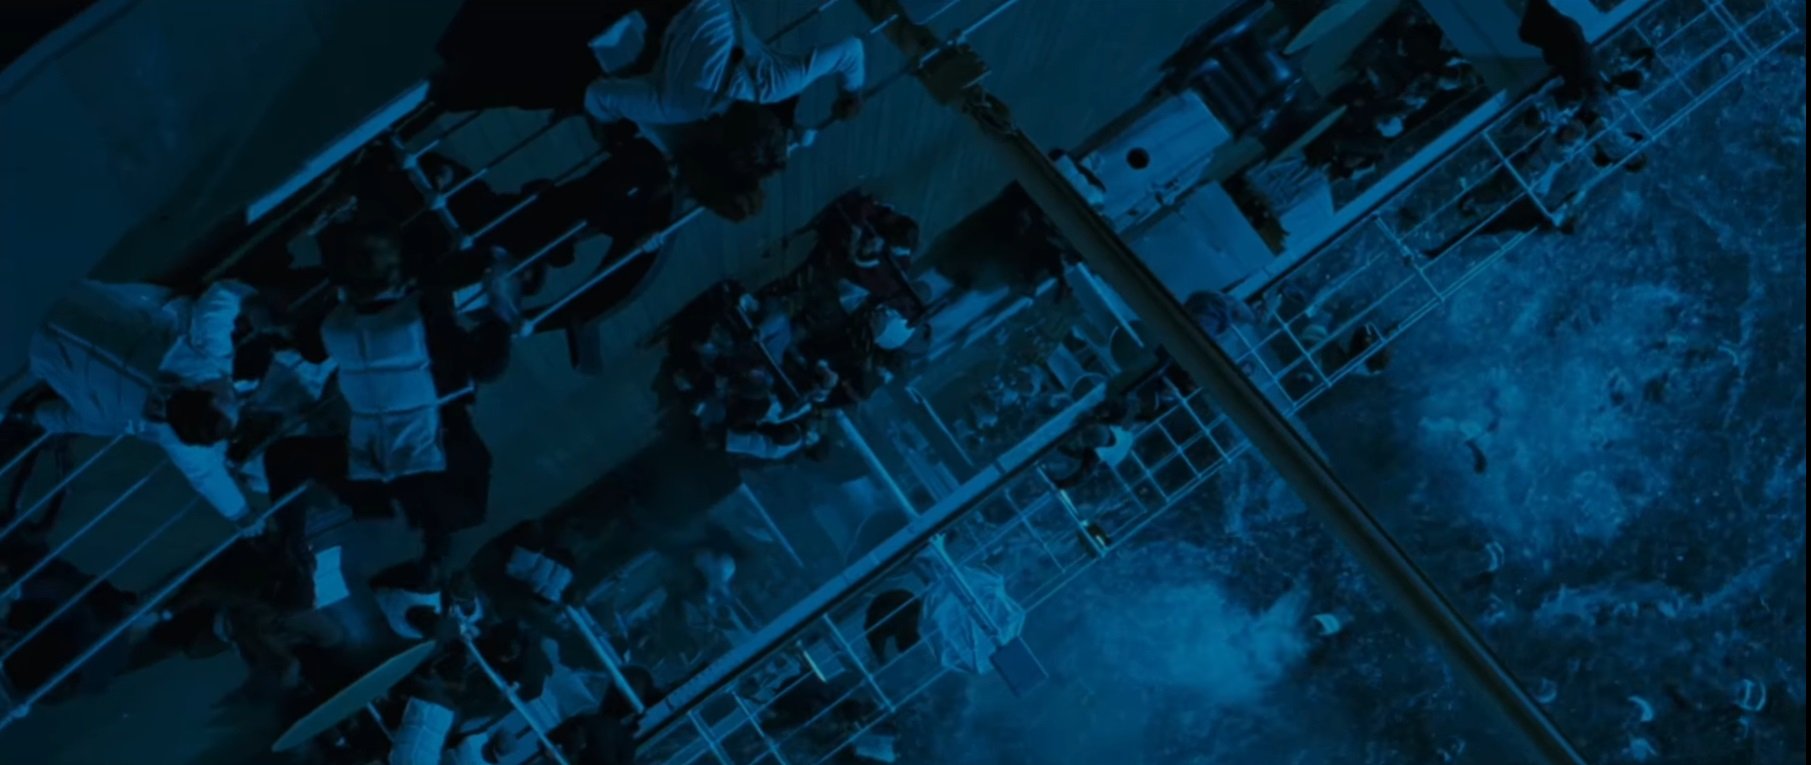 Escena del hundimiento en 'Titanic'. | Foto: YouTube/Movieclips Classic Trailers